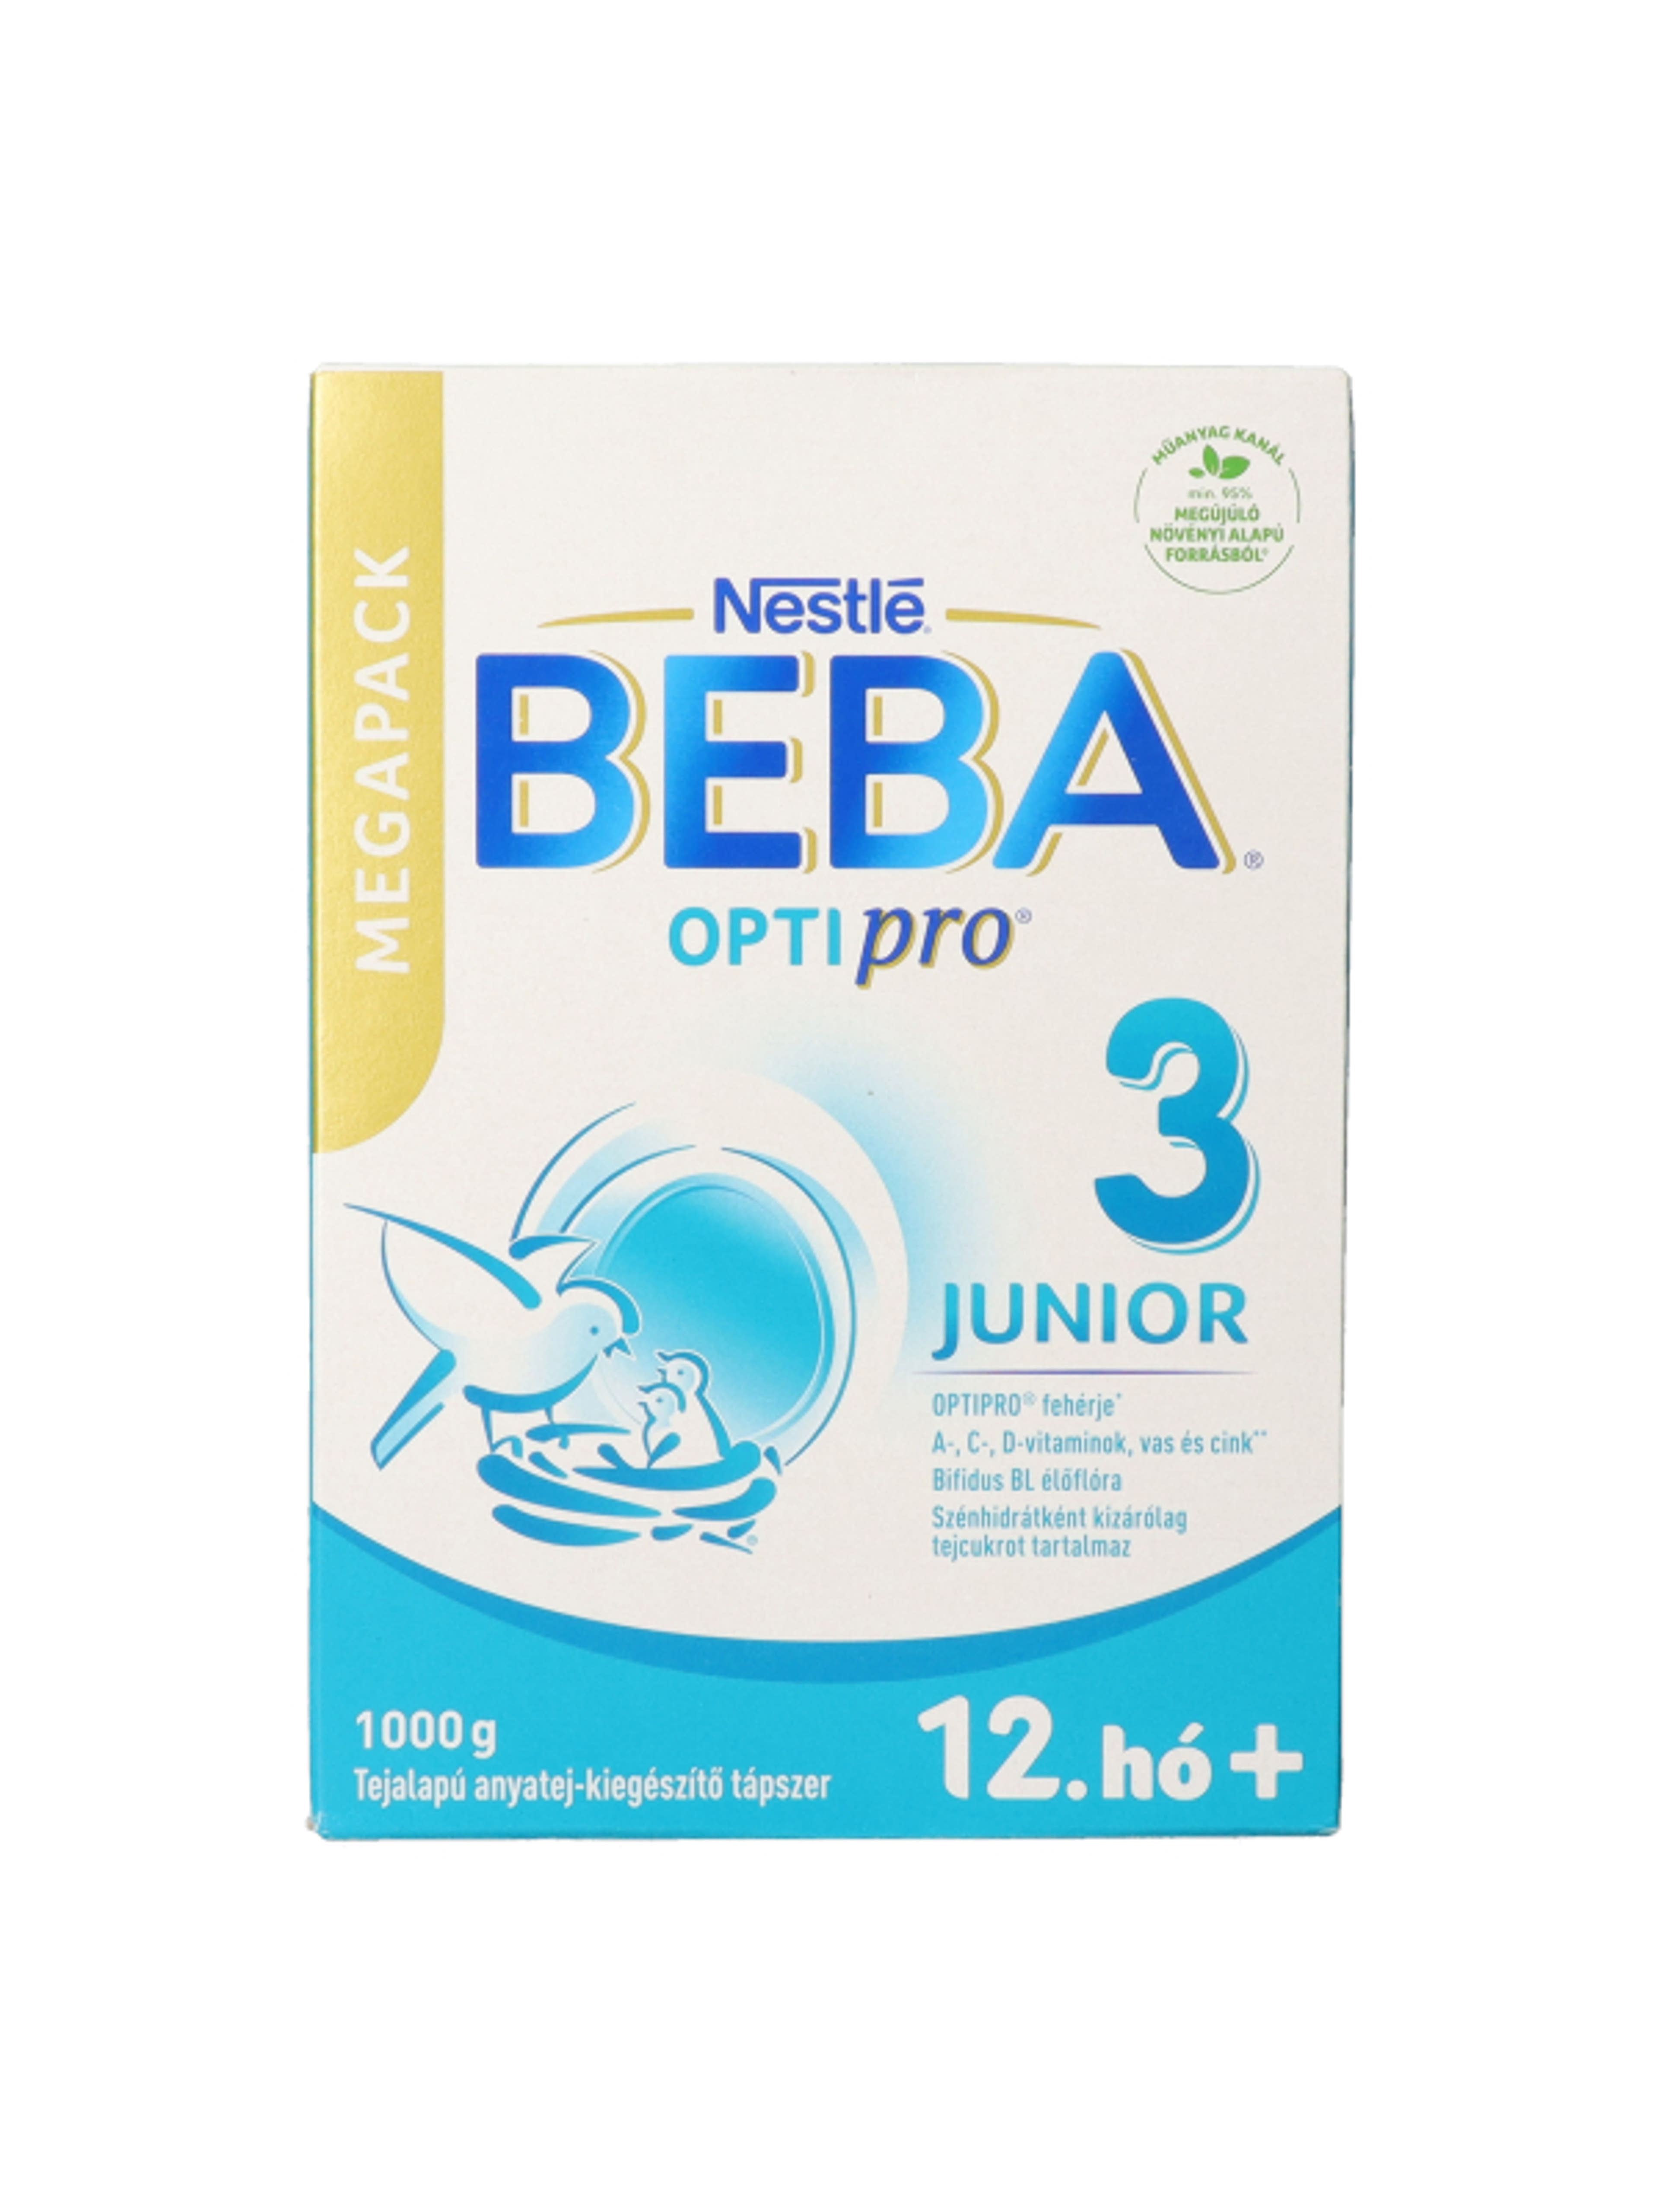 Beba Optipro 3 Junior tejalapú anyatej-kiegészítő tápszer 12. hónapos kortól - 1000 g-4